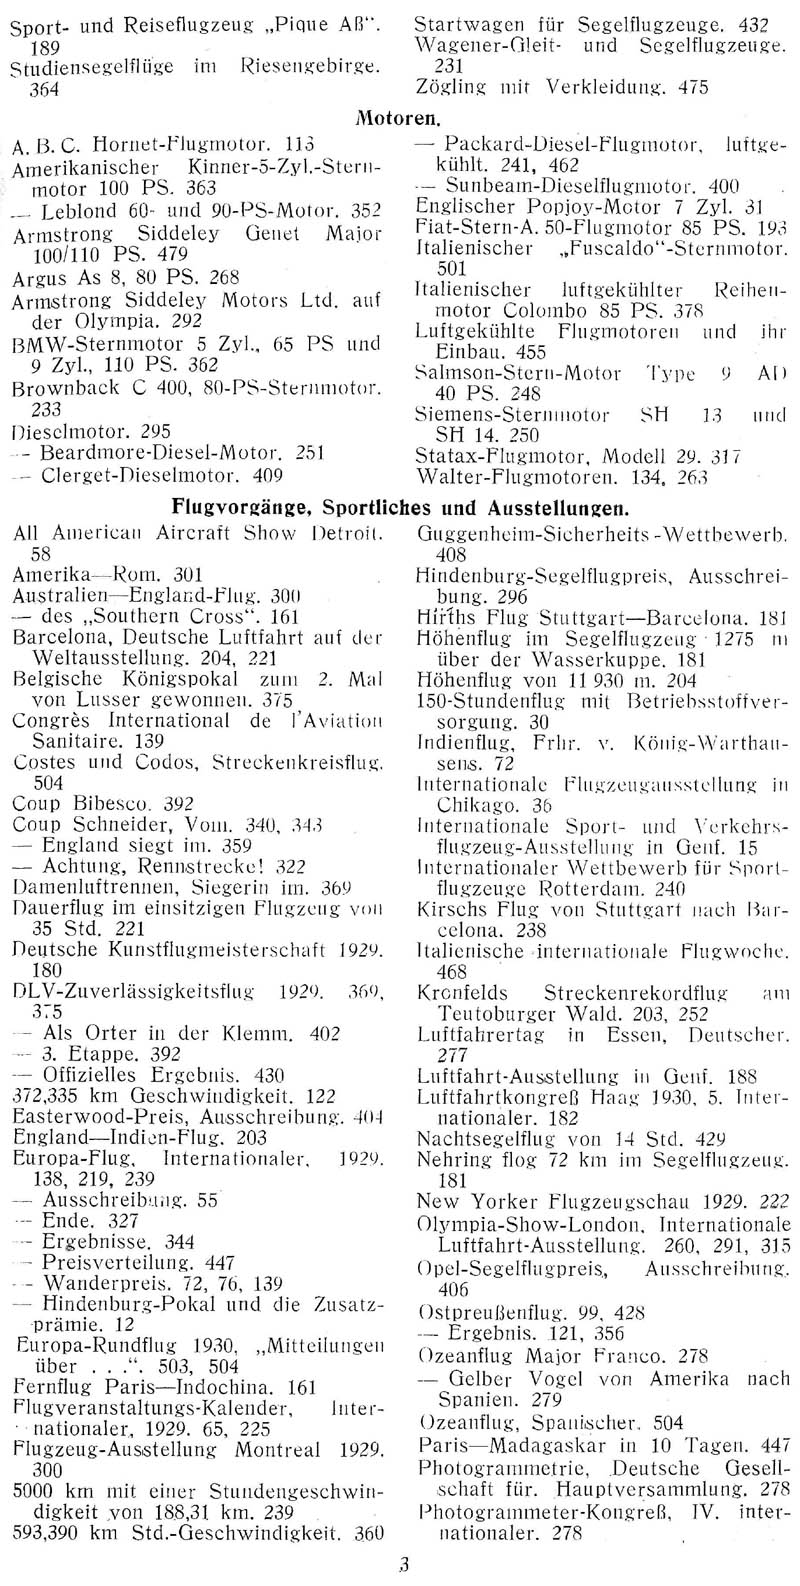 Sachregister und Inhaltsverzeichnis der Zeitschrift Flugsport für das Jahr 1929